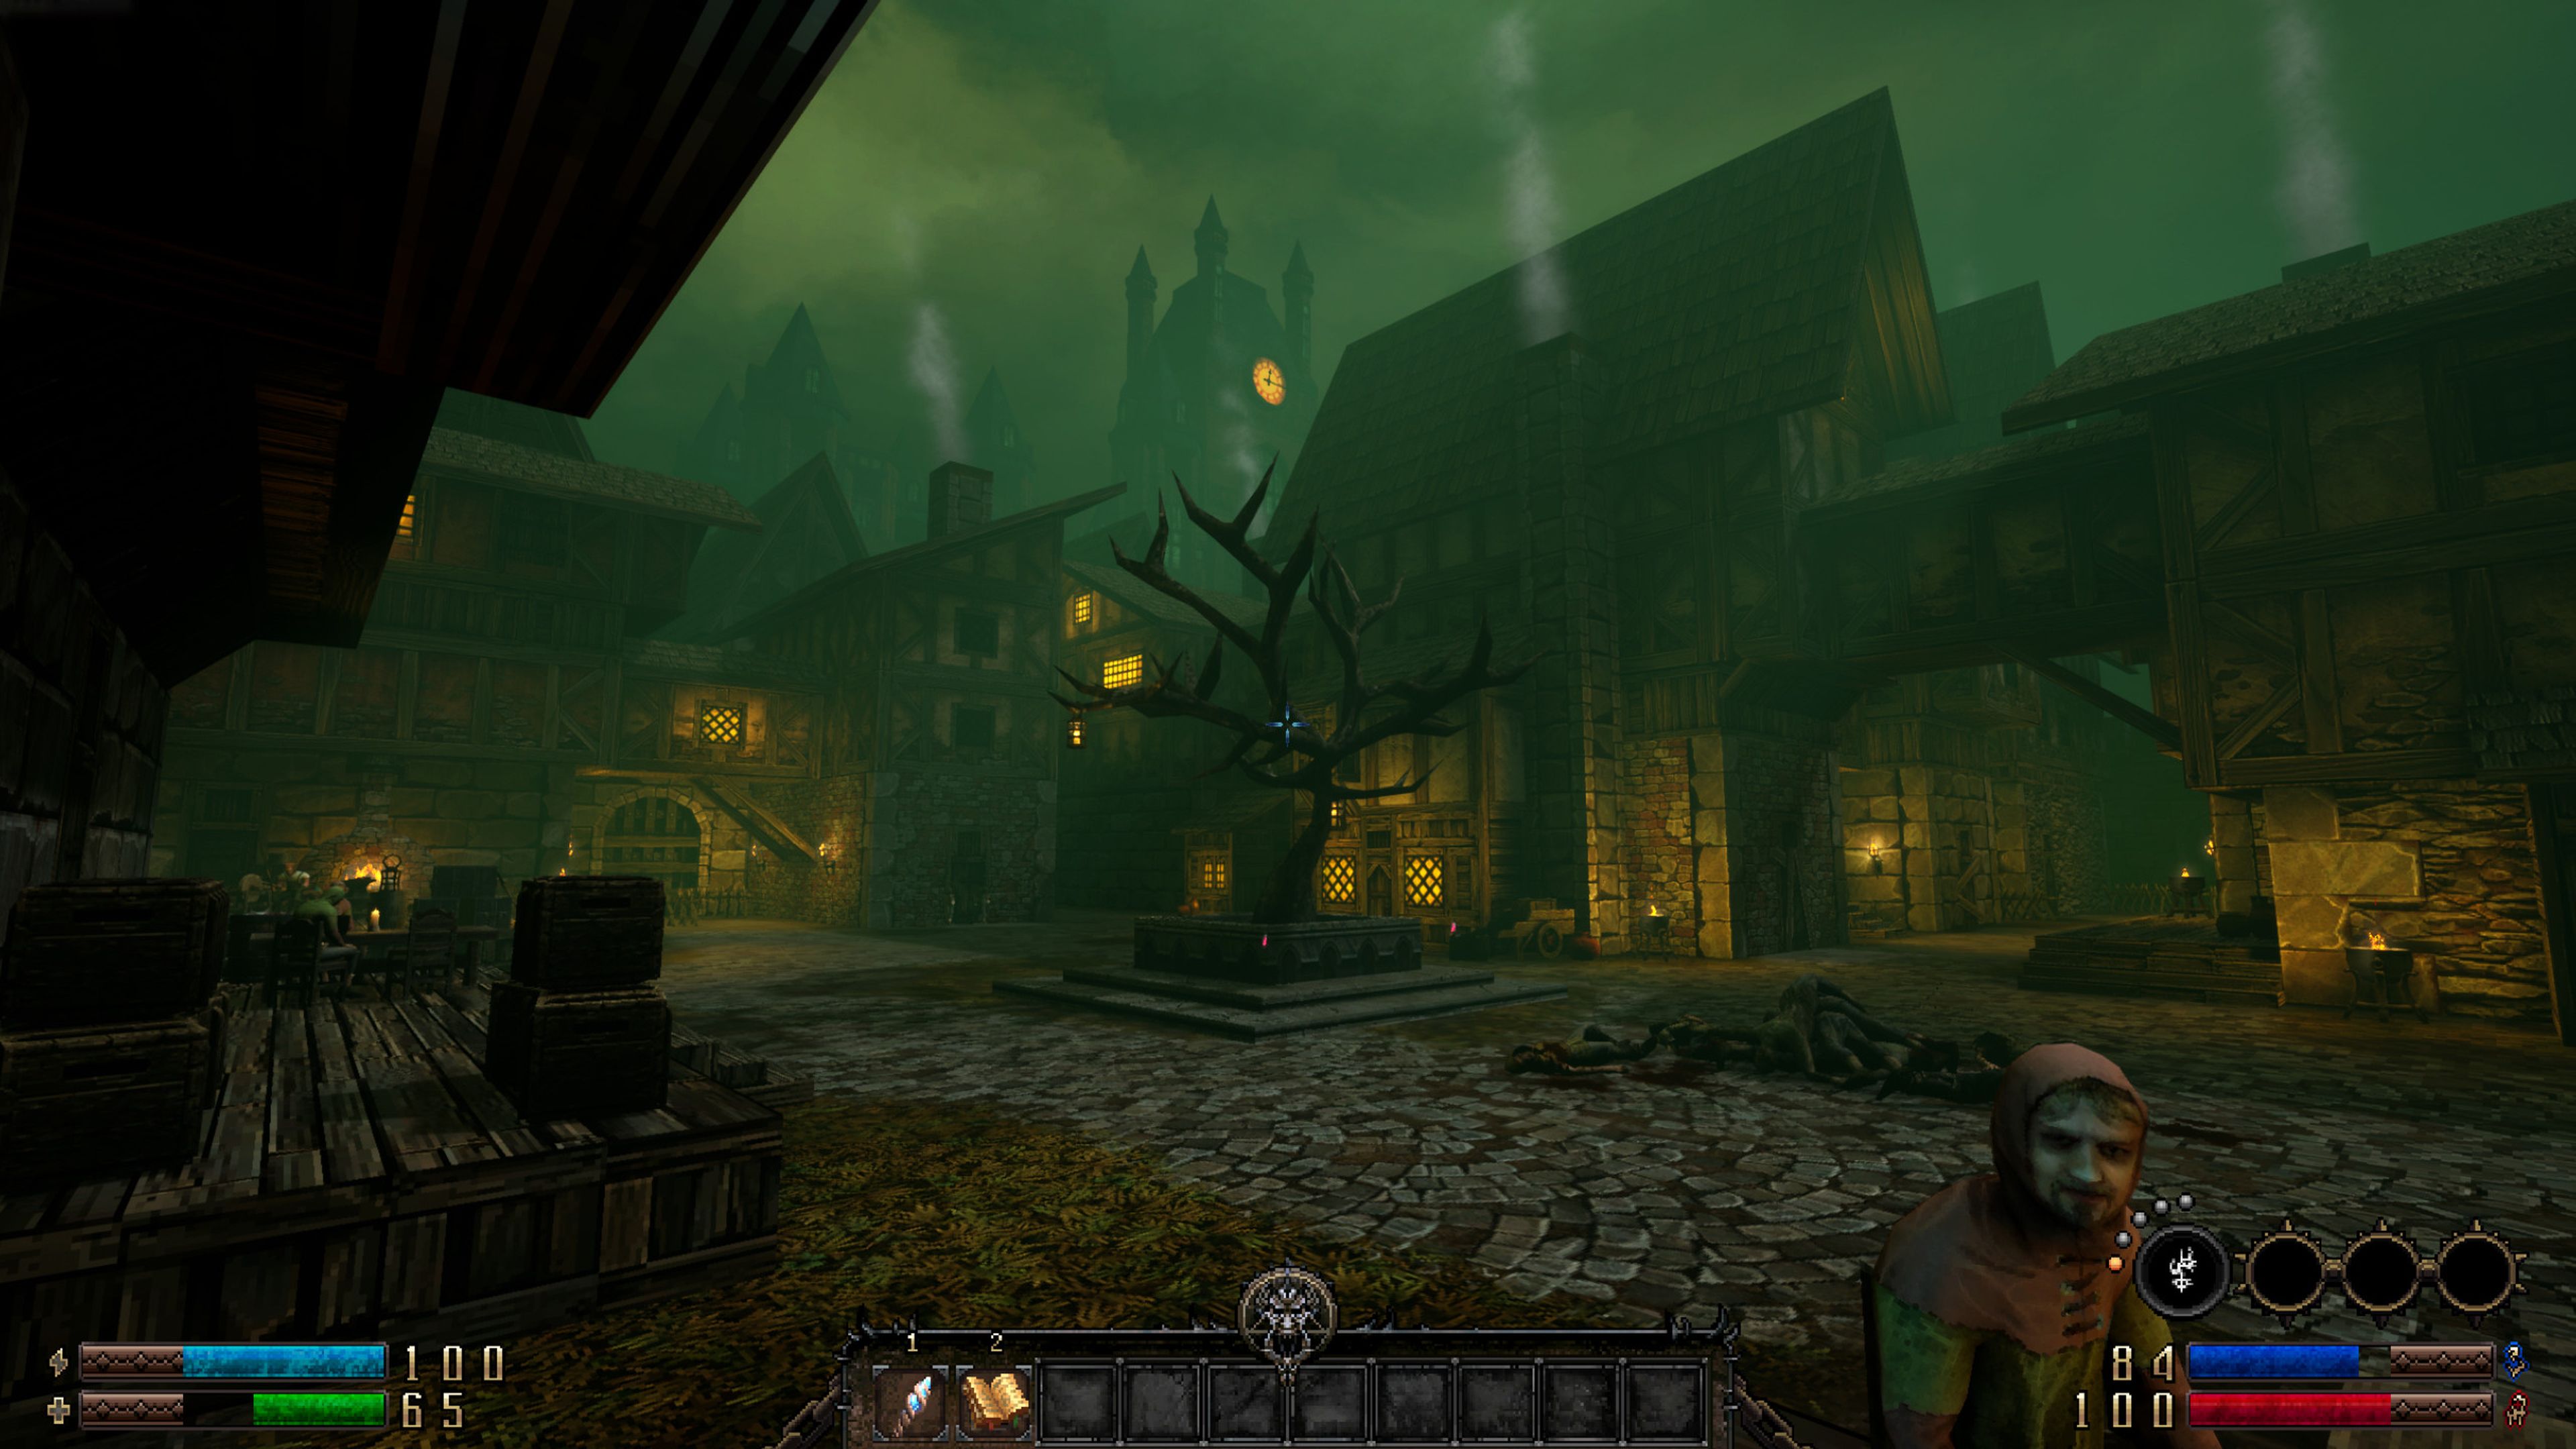 El recién lanzado 'Graven' (imagen) fue uno de los juegos que protagonizó el evento de Steam del pasado mes de febrero.